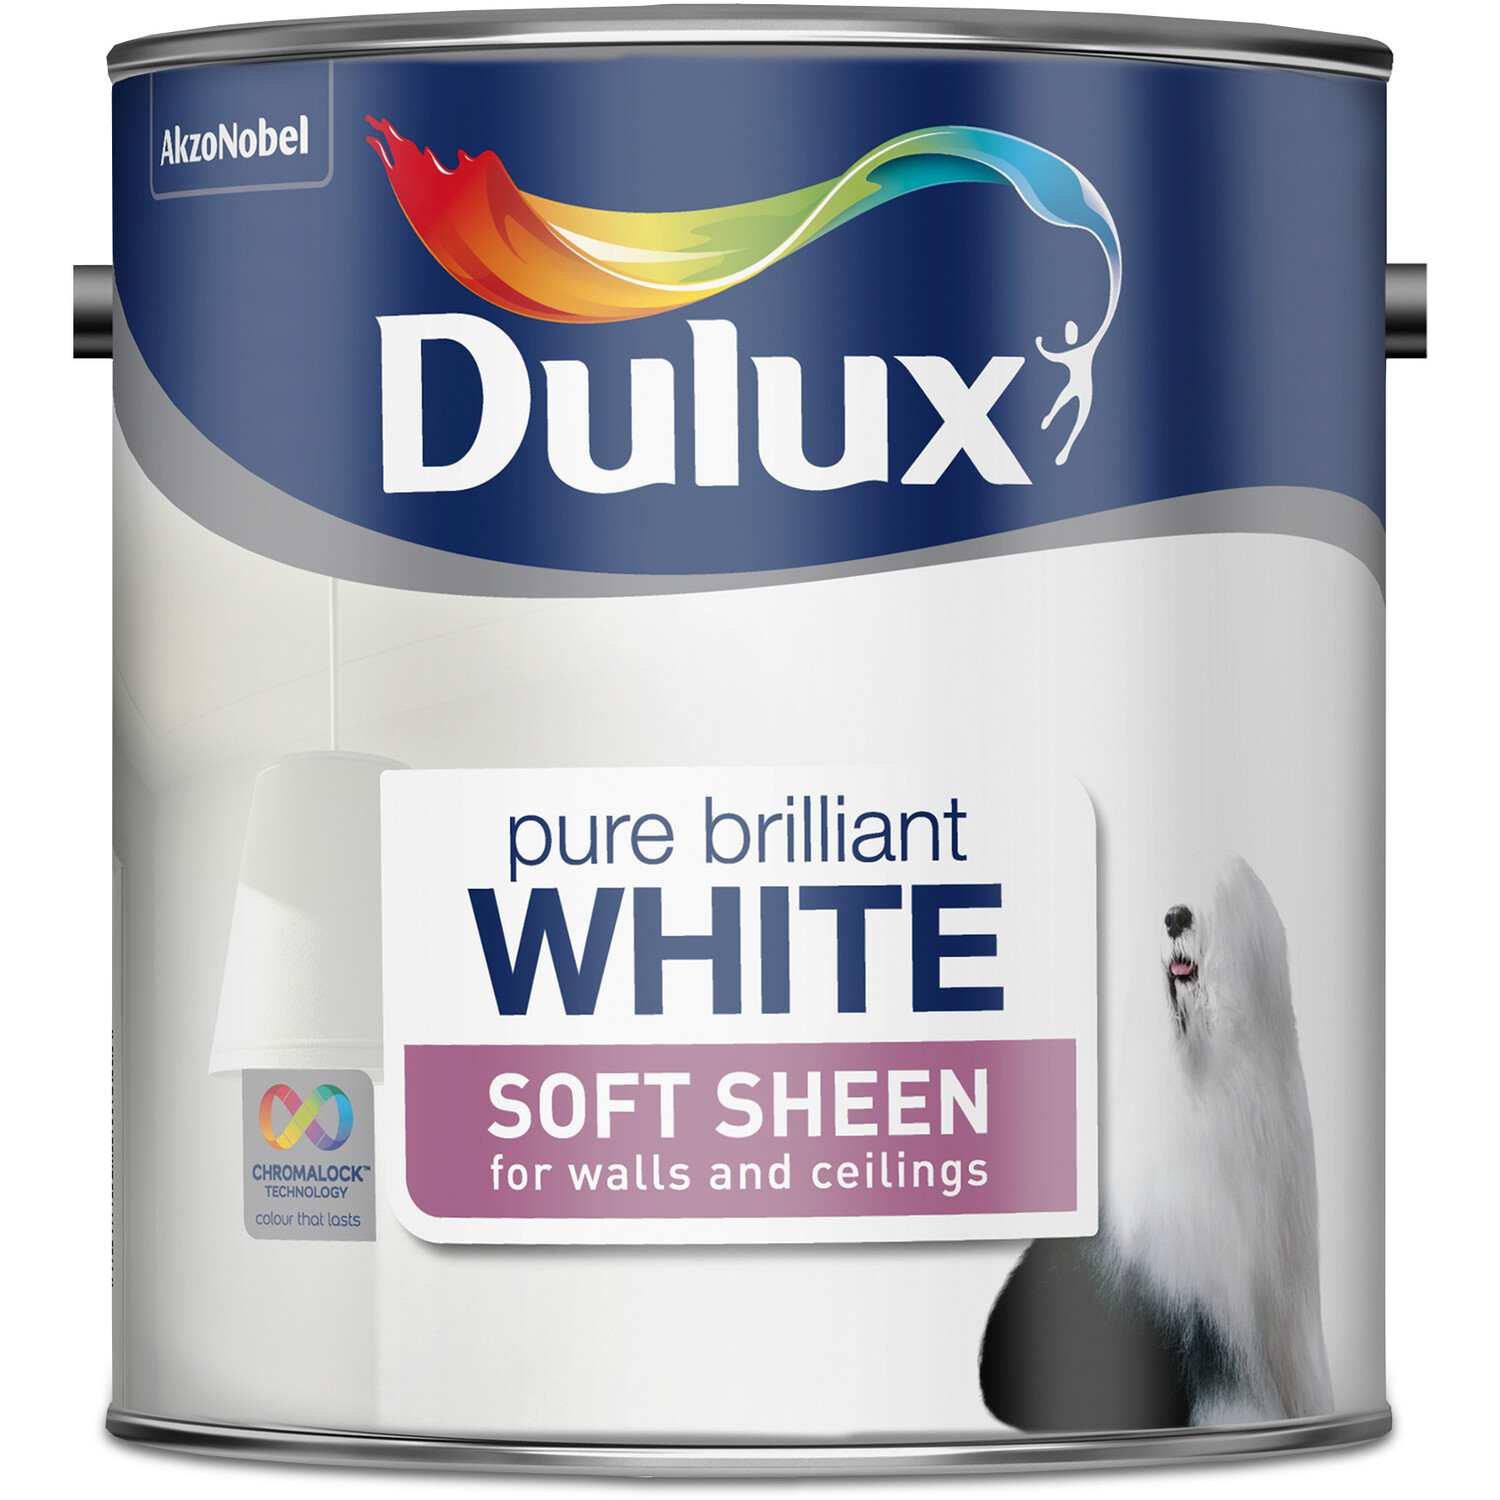 Dulux Walls & Ceilings Pure Brilliant White Soft Sheen Paint 2.5L Image 3